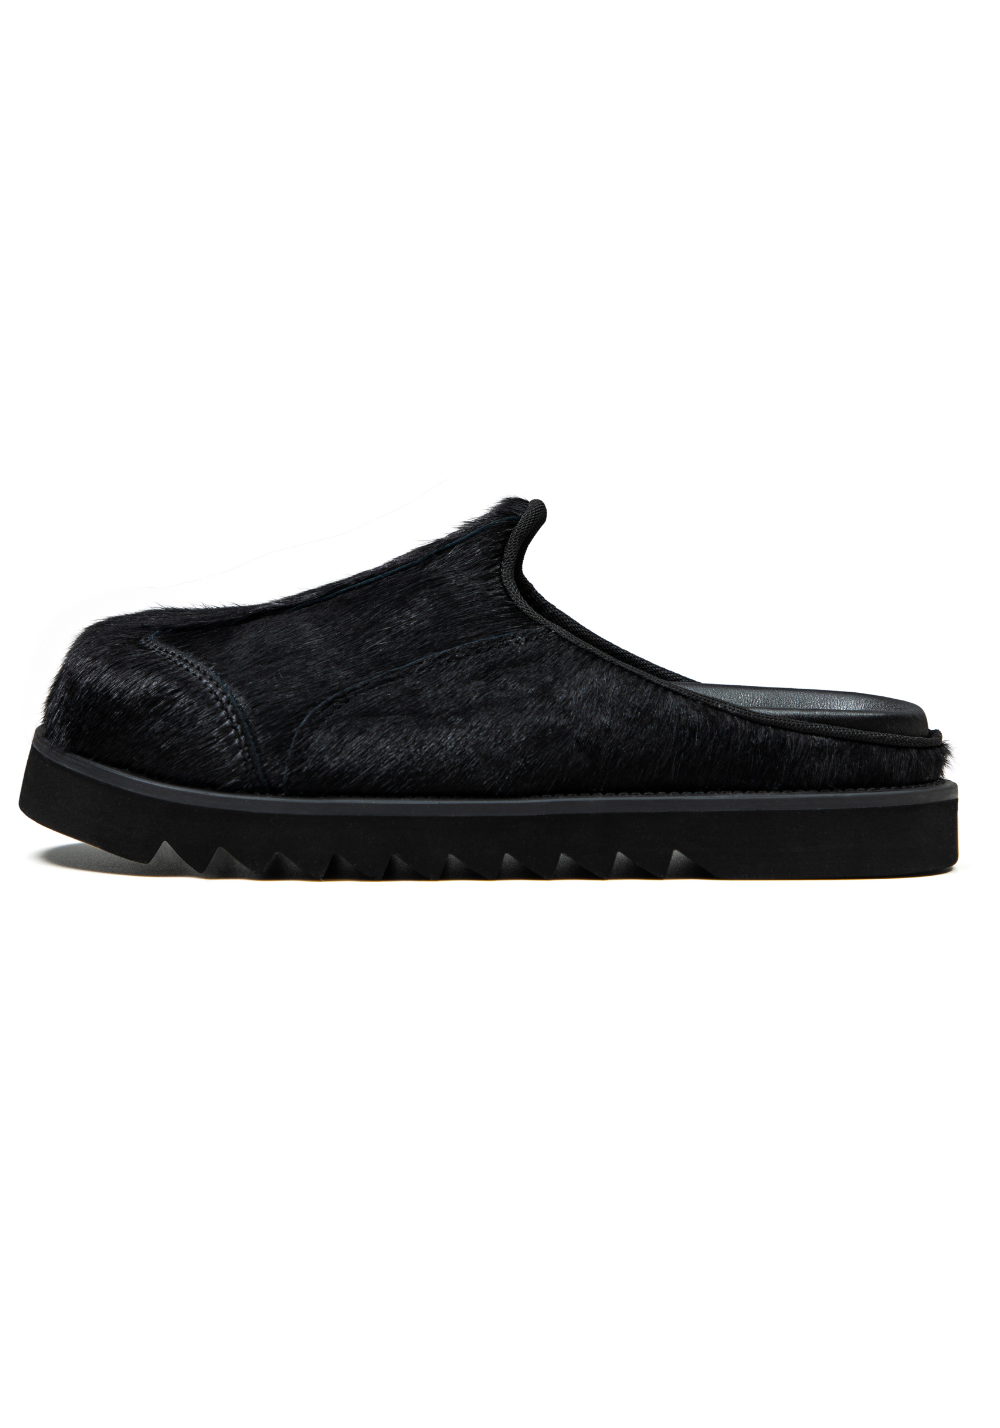 Leather Loafer - Black - PSYLOS 1